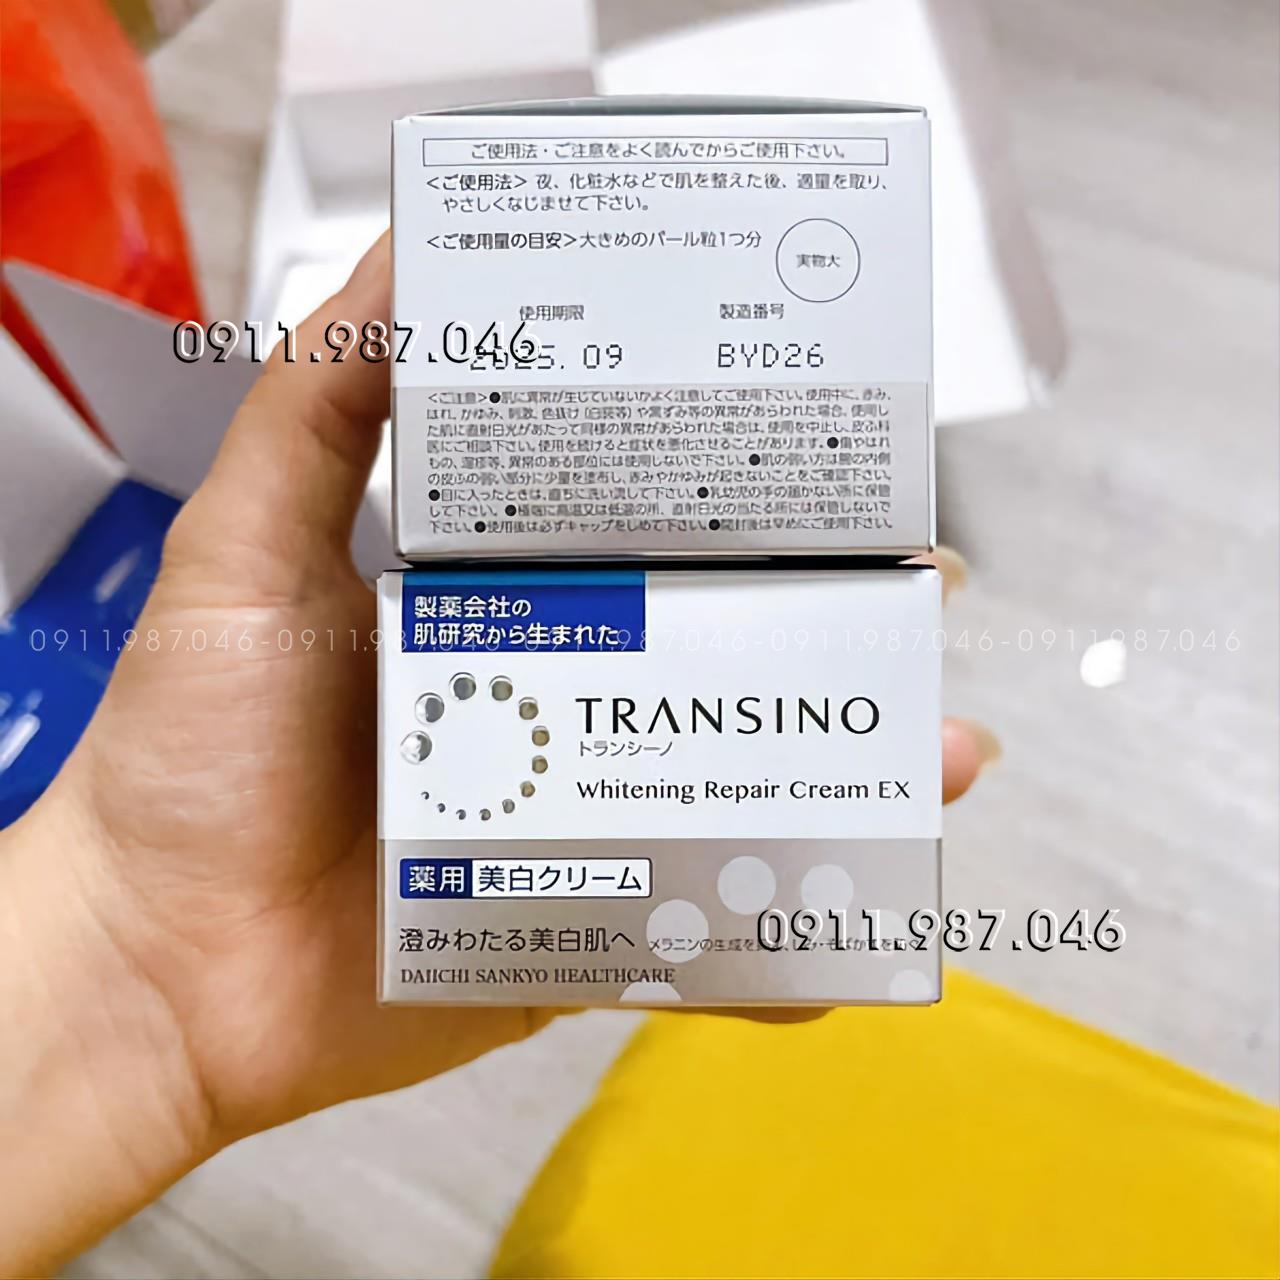 Kem dưỡng trắng da Transino Whitening Repair Cream EX chính hãng - PN158457